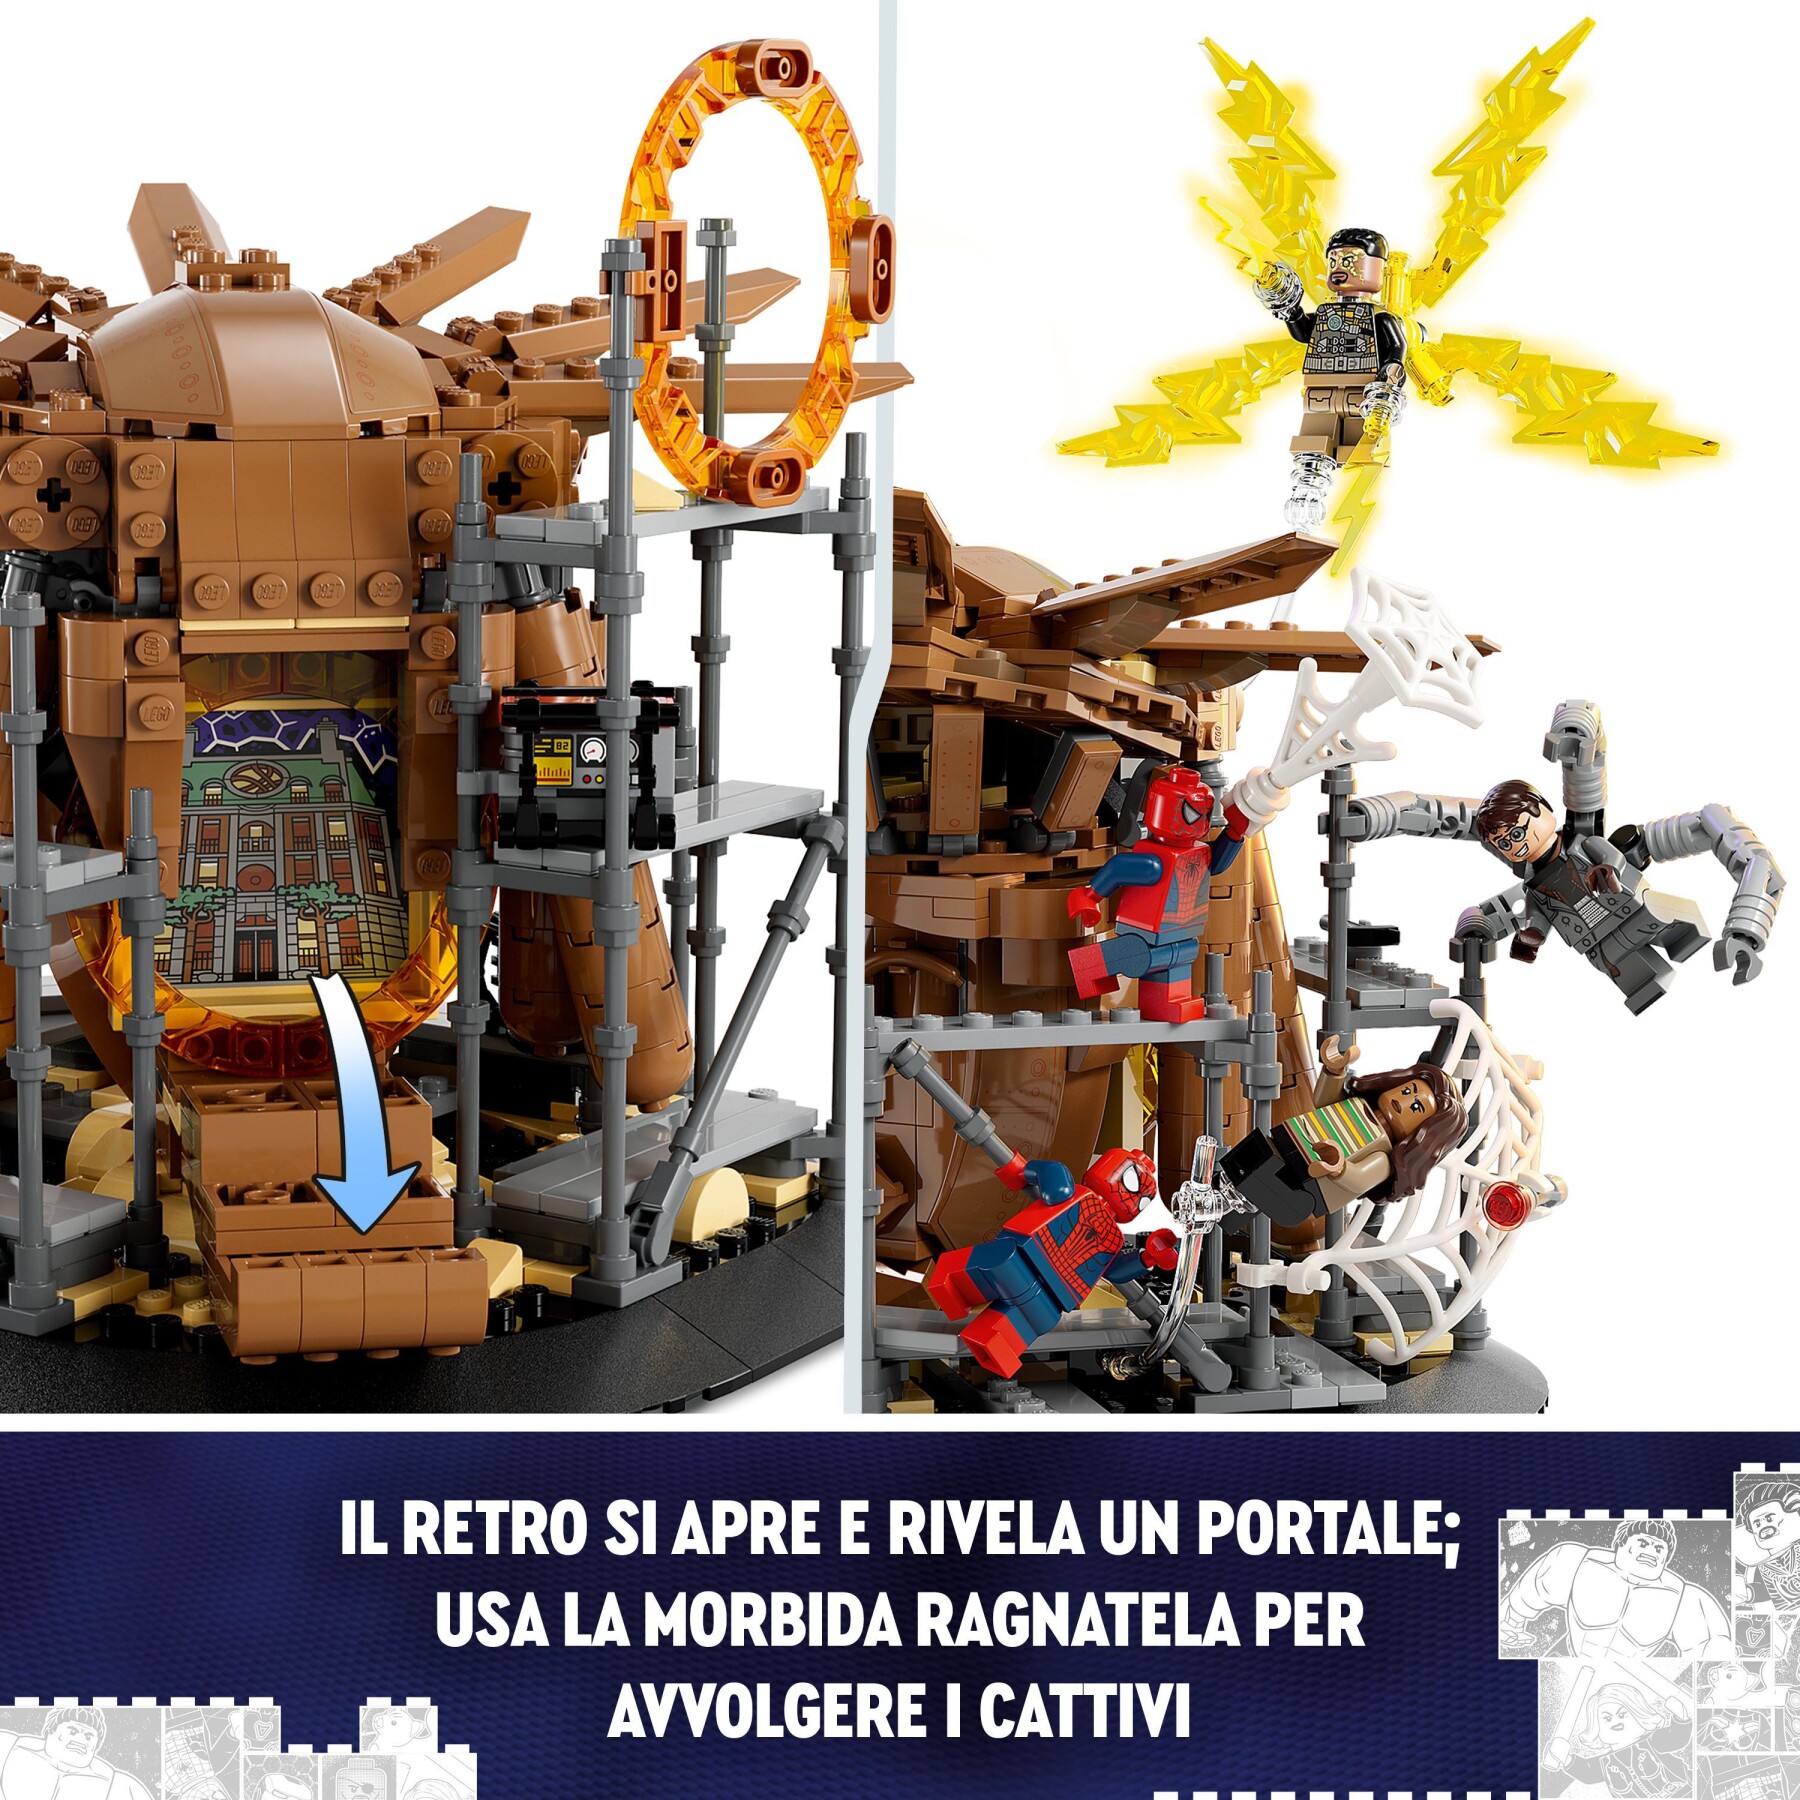 Lego marvel 76261 la battaglia finale di spider-man, ricrea la scena di spider-man: no way home con 3 minifigure di peter parker - LEGO SPIDERMAN, LEGO SUPER HEROES, Spiderman